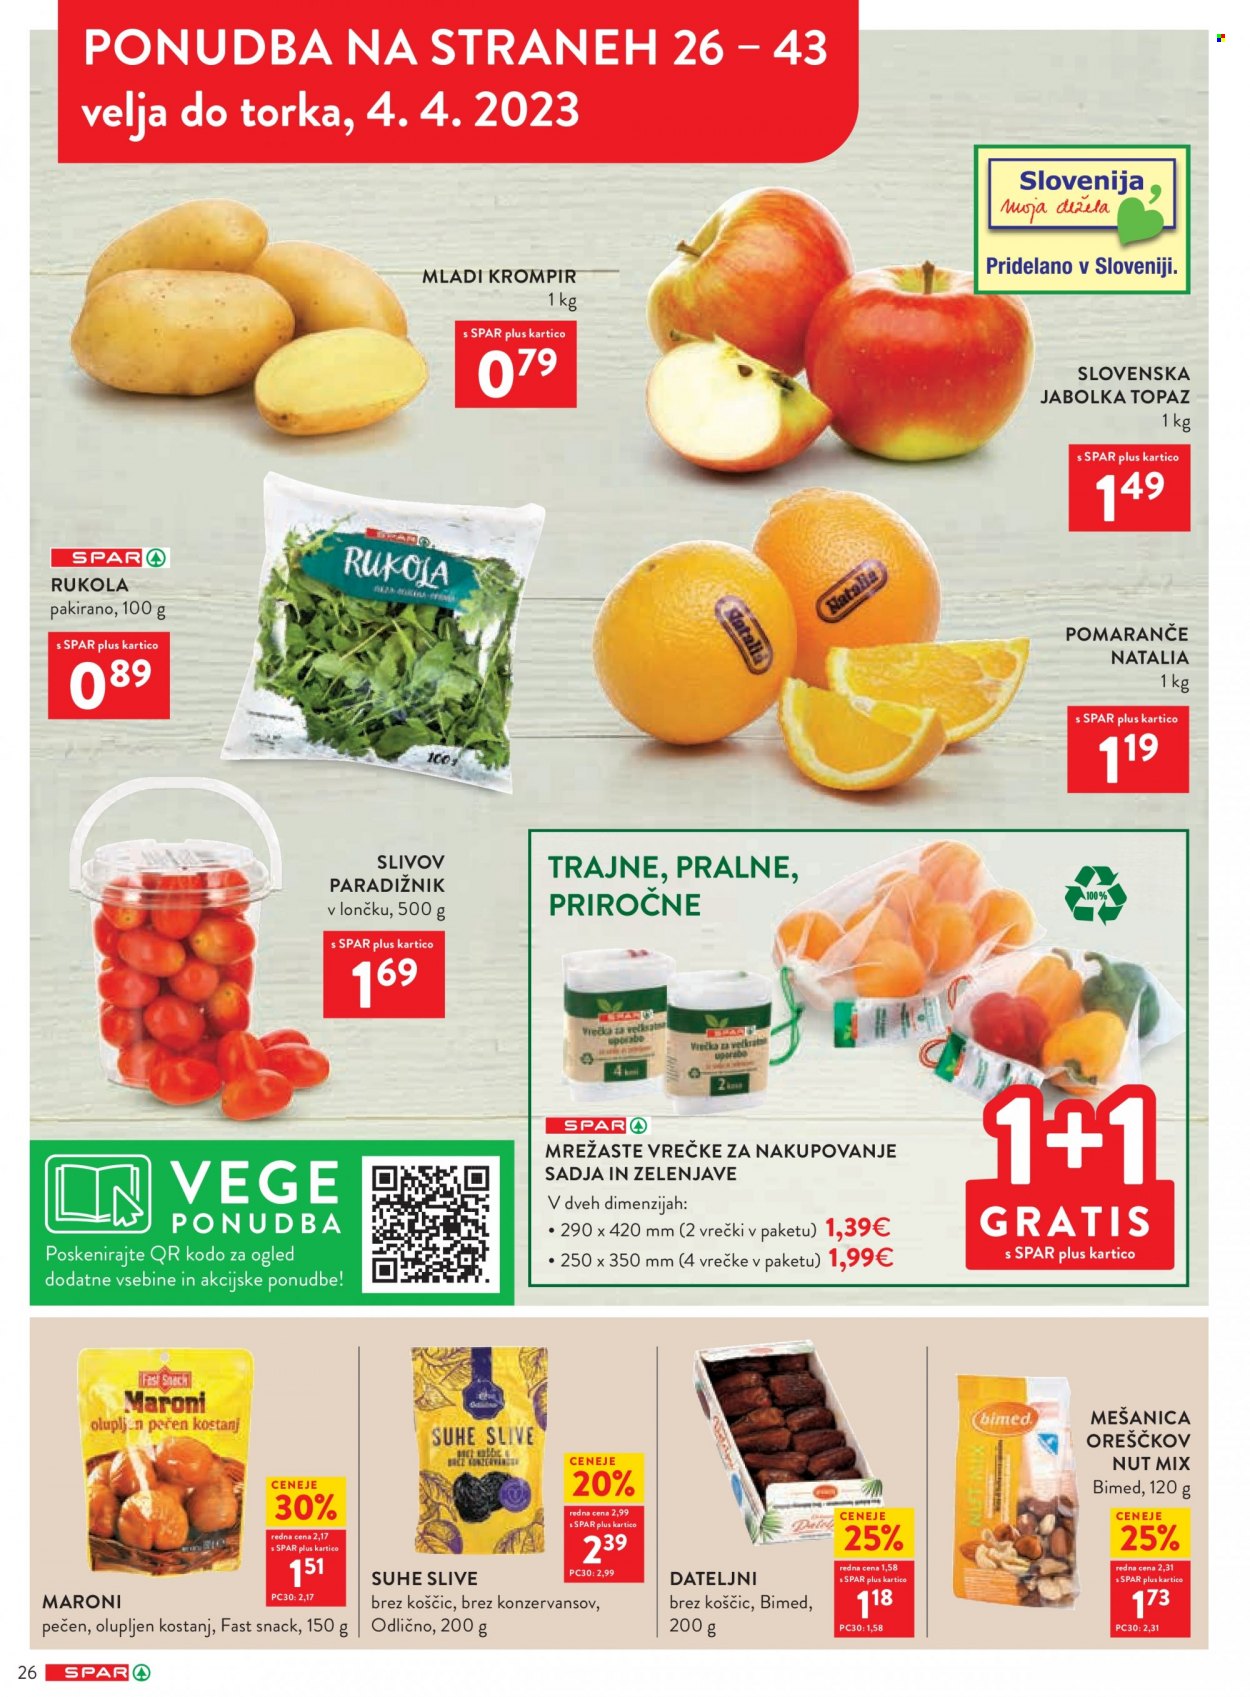 thumbnail - SPAR katalog - 29.3.2023 - 11.4.2023 - Ponudba izdelkov - jabolka, pomaranče, slive, krompir, mladi krompir, paradižnik, dateljni, vrečke. Stran 26.